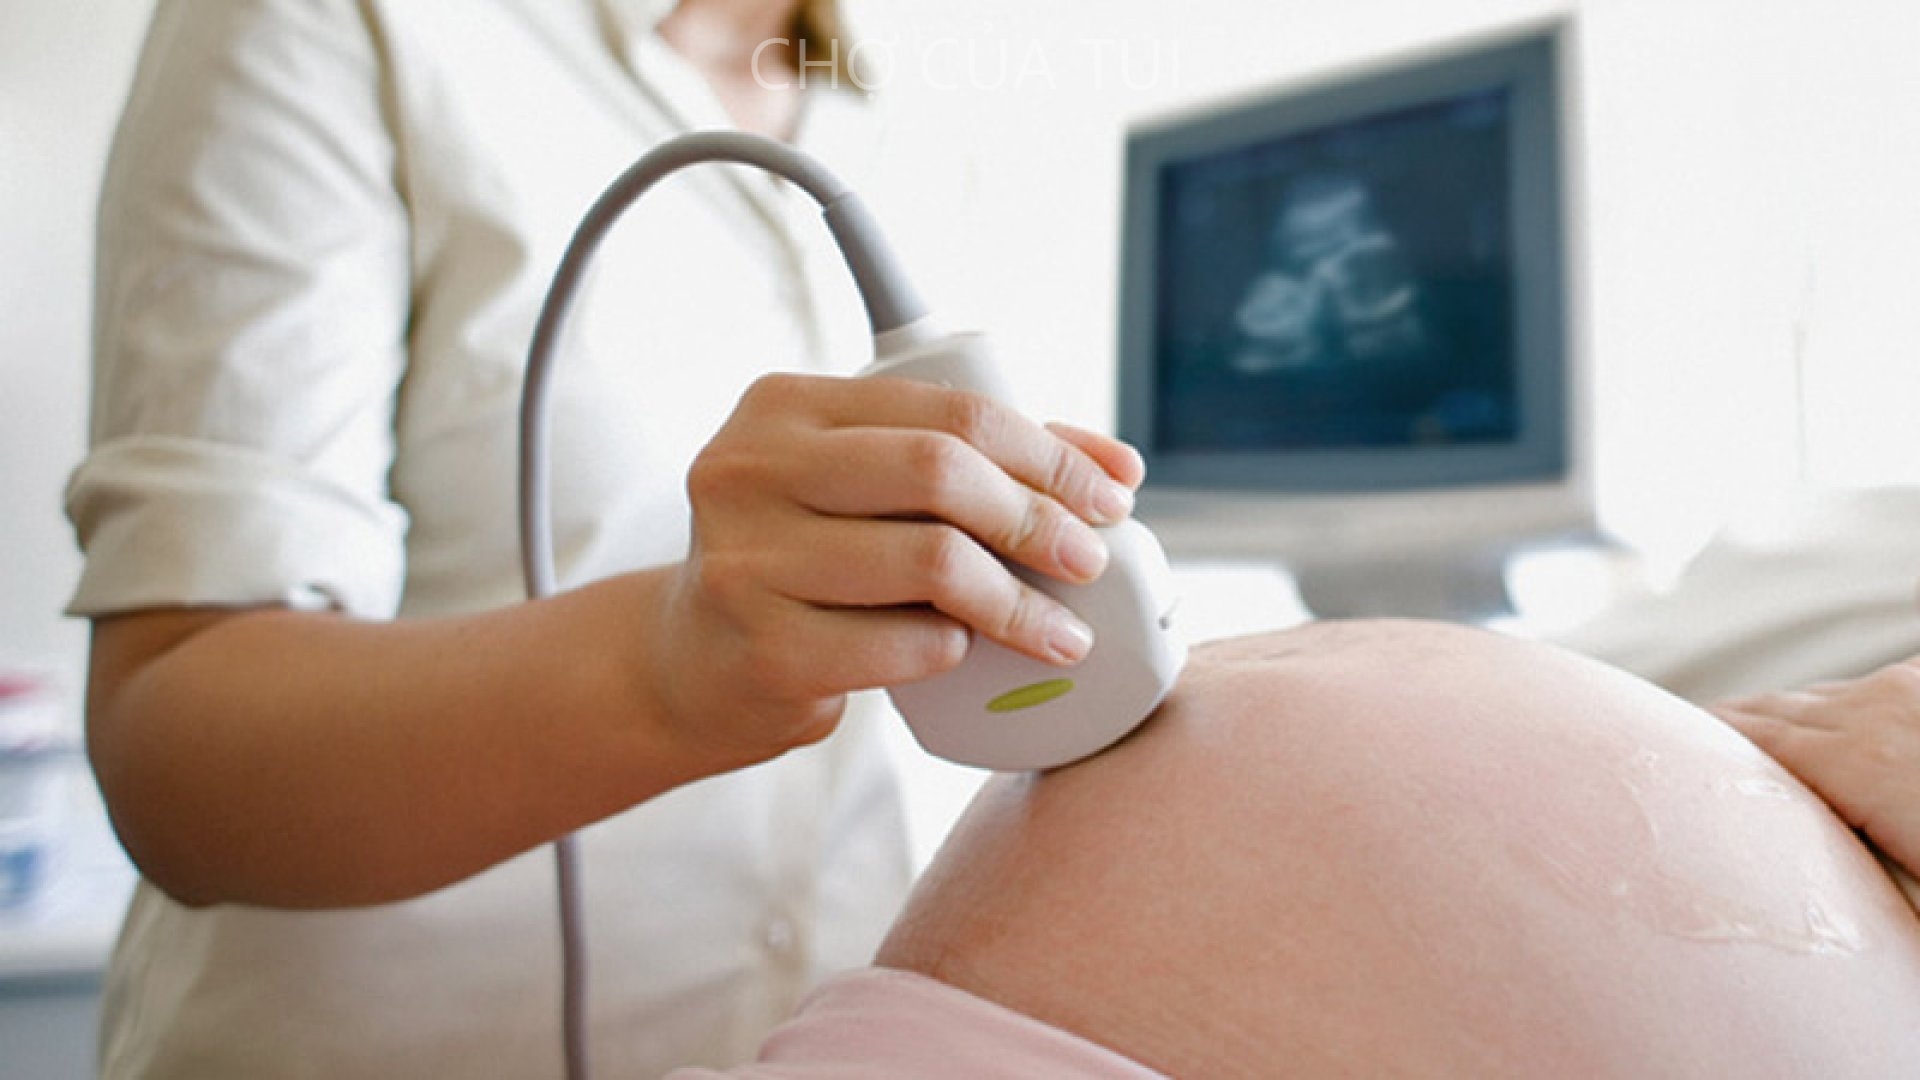 Quy trình khám sàng lọc trước sinh bao gồm những giai đoạn nào?
